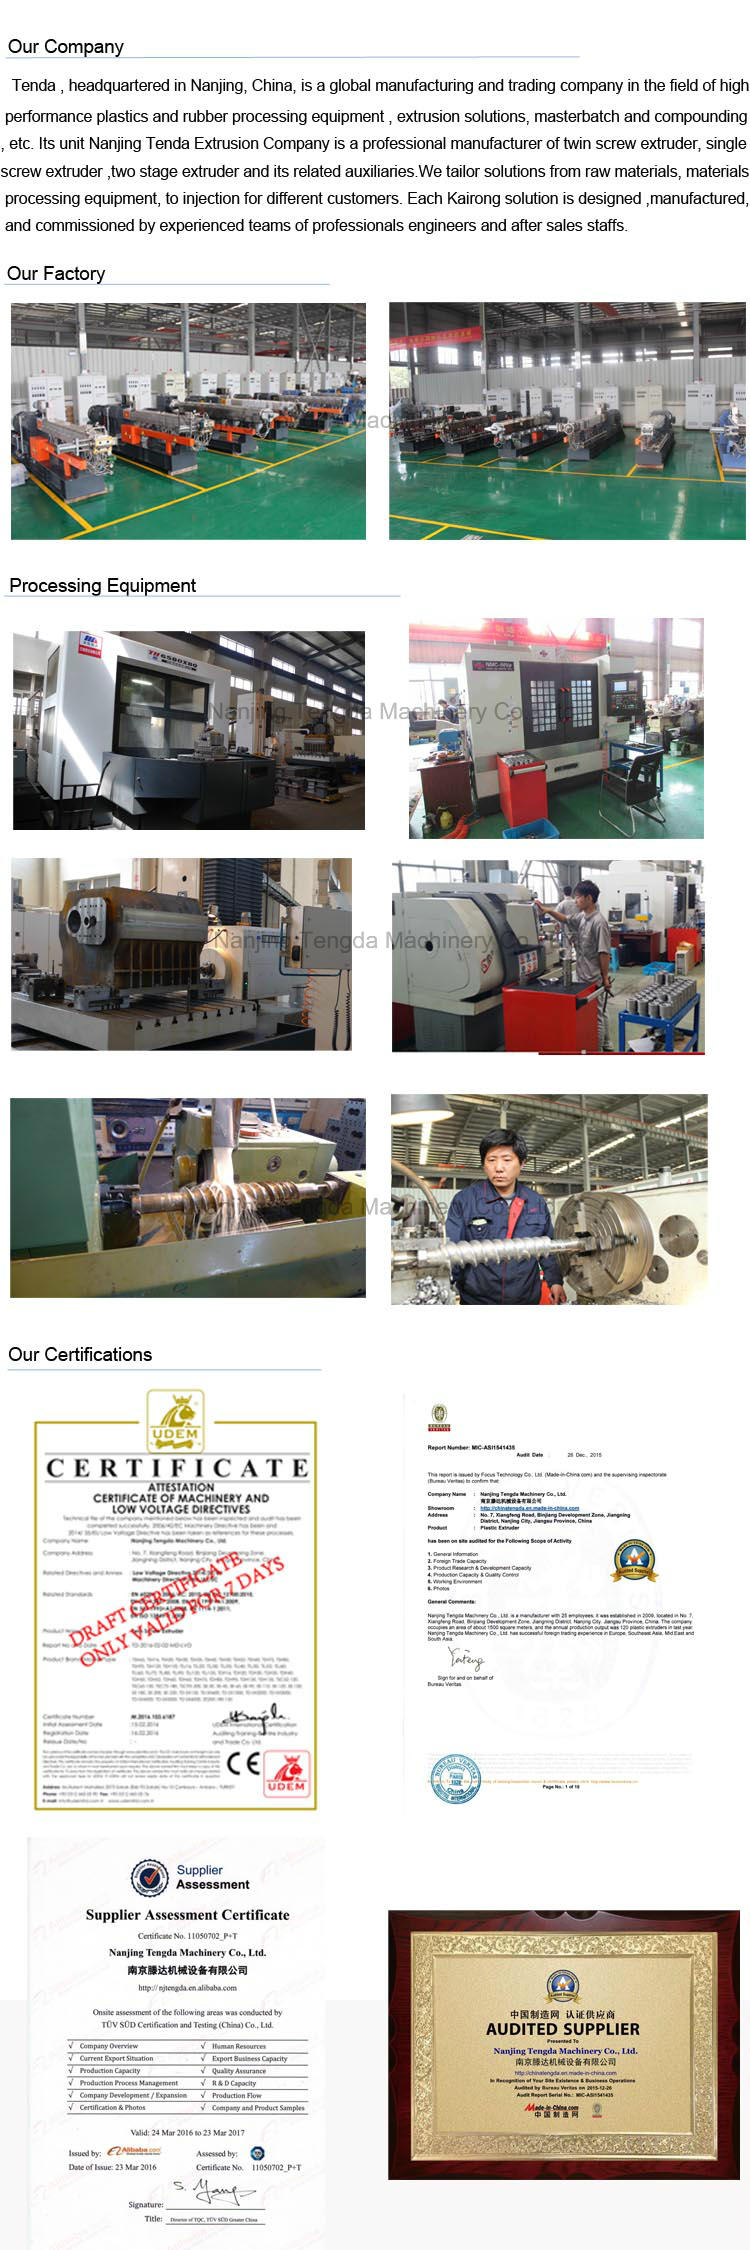 Barrel for Nanjing Tengda Extrusion Machine